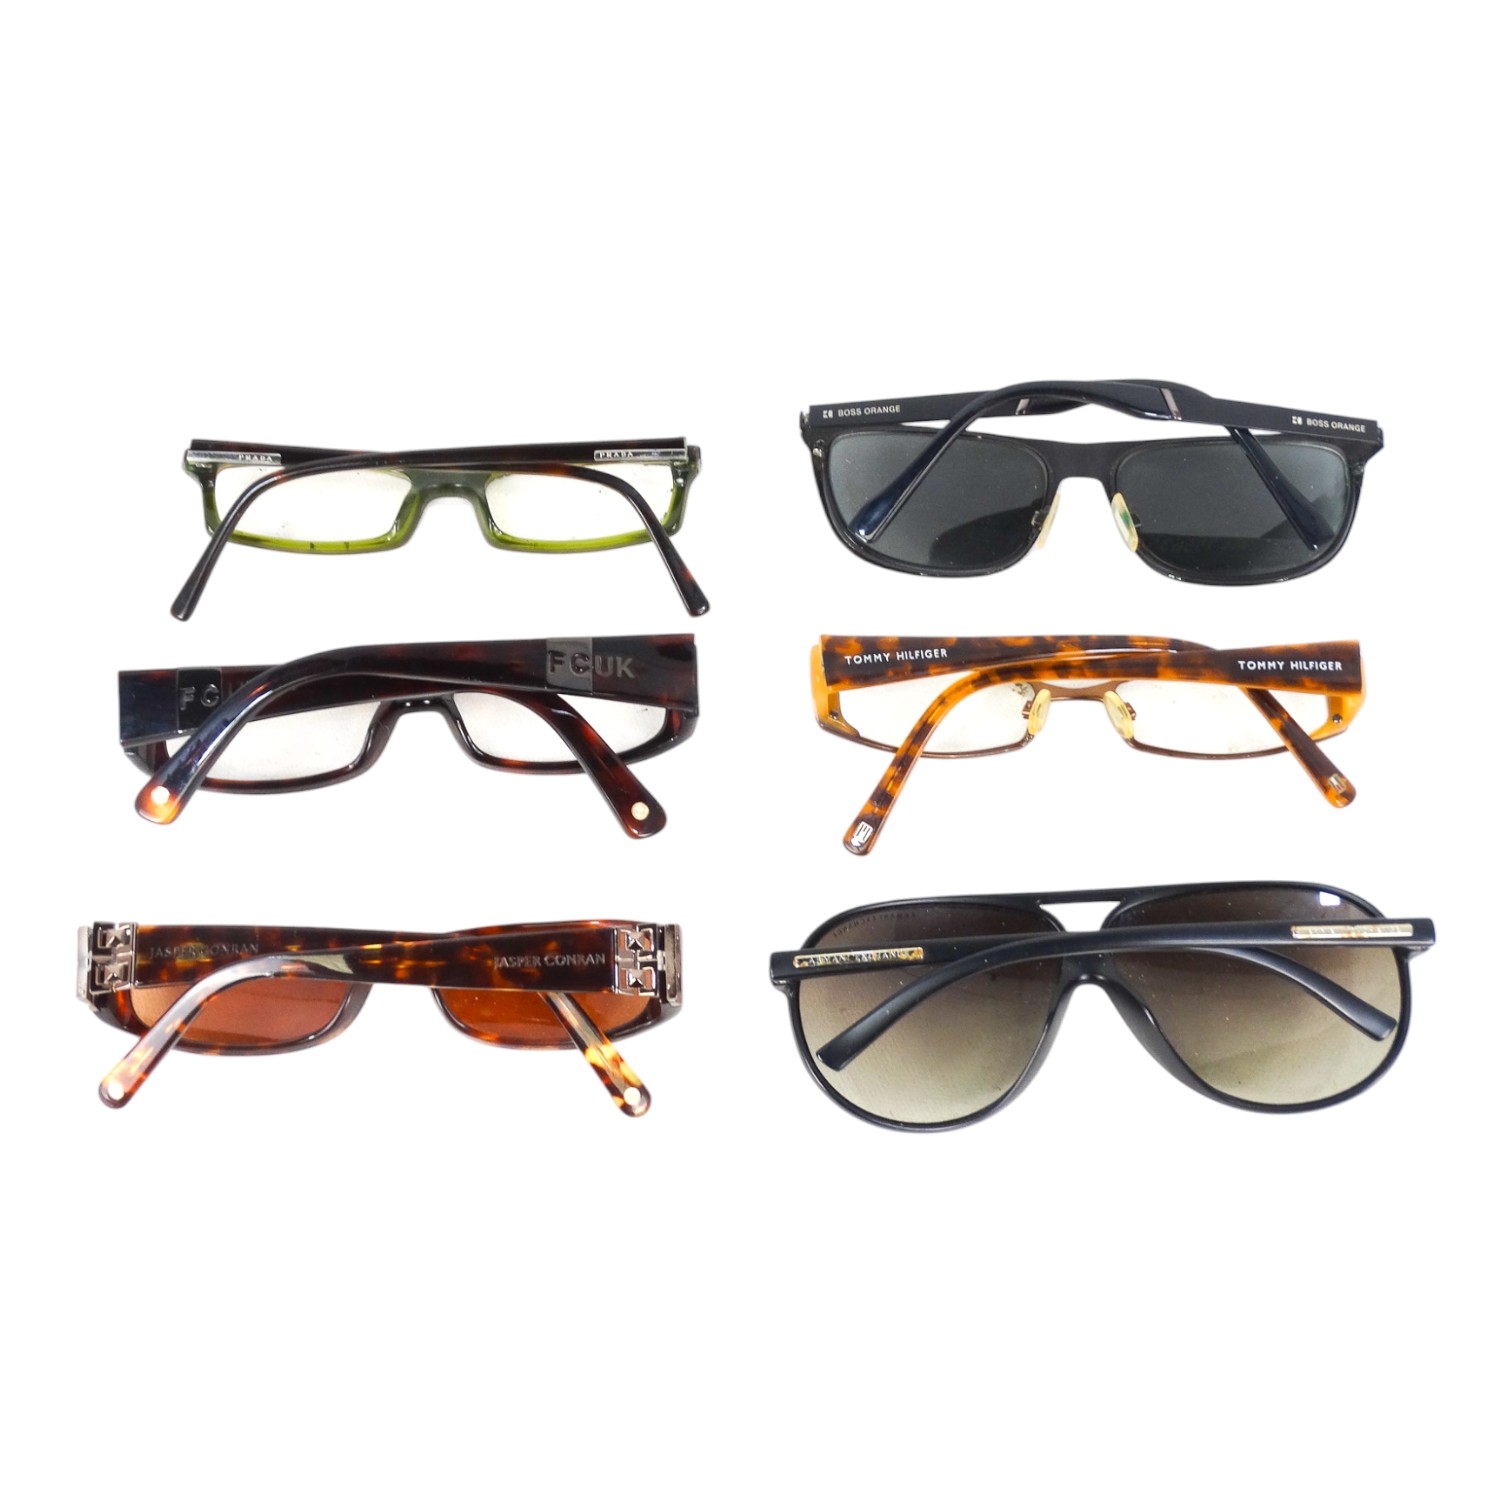 A quantity of fashion prescription glasses and sunglasses - to include Jasper Conran, Armani - Image 2 of 2